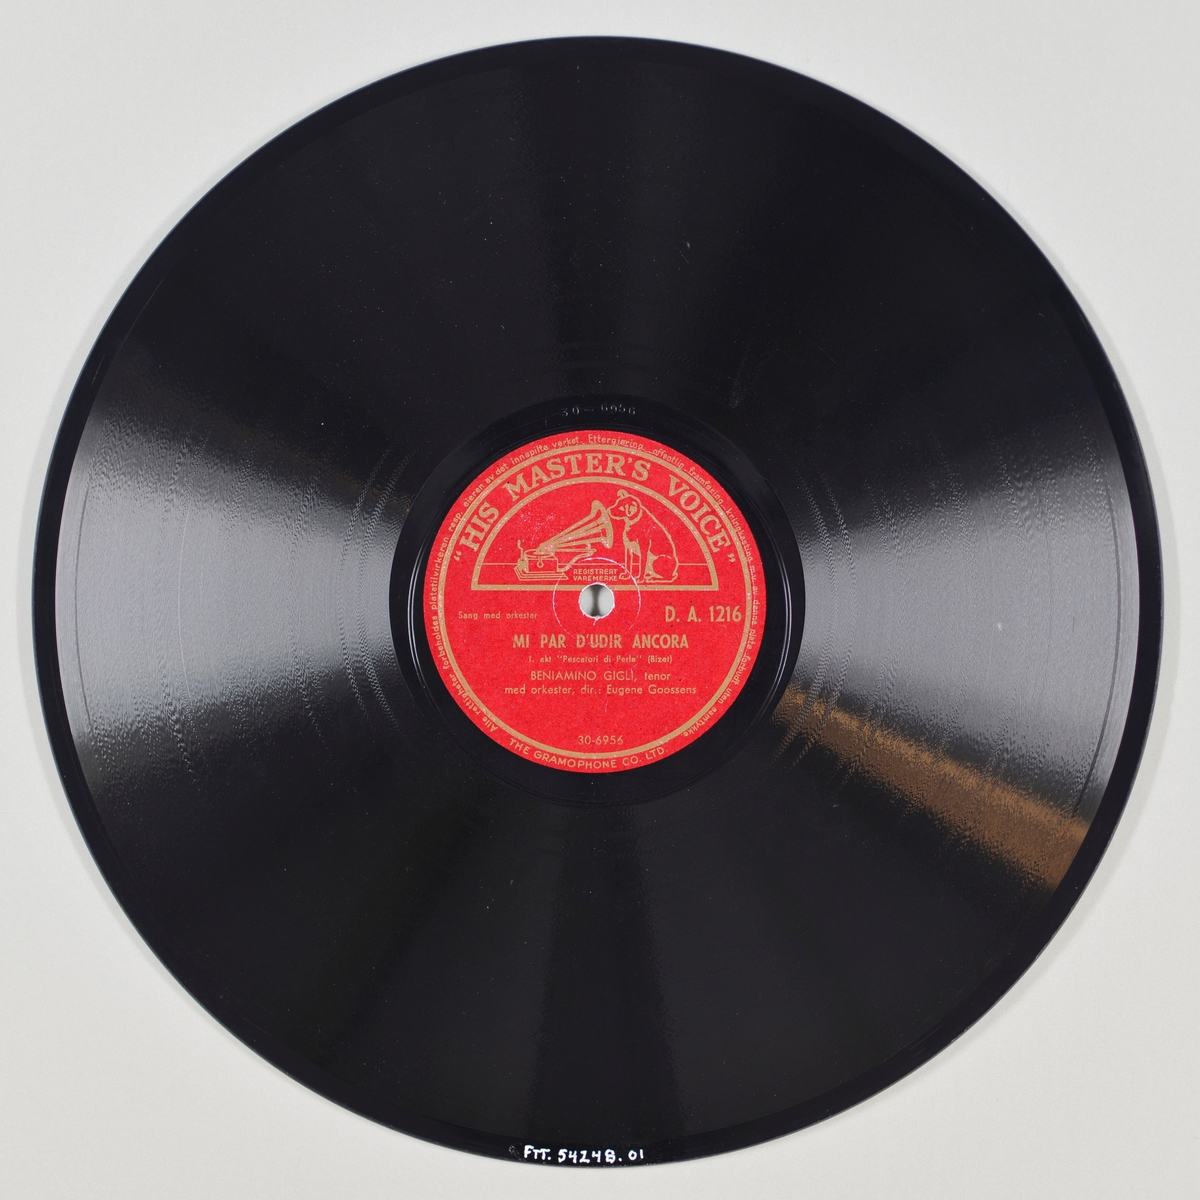 FTT.54248.01:
Svart grammofonplate laget av bakelitt og skjellak. Etiketten er rød med skrift i gull, for tekst se "Påført tekst/merker". På etiketten er det bilde av en hund som sitter og lytter til en grammofon (kjennetegnet til "His Master's Voice"). Tegningen er gjort i gull mot den røde bakgrunnen.

FTT.54248.02:
Plateomslaget til platen er laget av lysebrunt papir som er limt. Tekst og illustrasjon er gjort i mørkere brunt. For tekst for forsiden av plateomslaget se "Påført tekst/merker". På den ene siden er logoen til HMV sammen med tegningen av en grammofon. På den andre siden er logoen til HMV samt tegningen av et orkester, en plate og et kabinett.